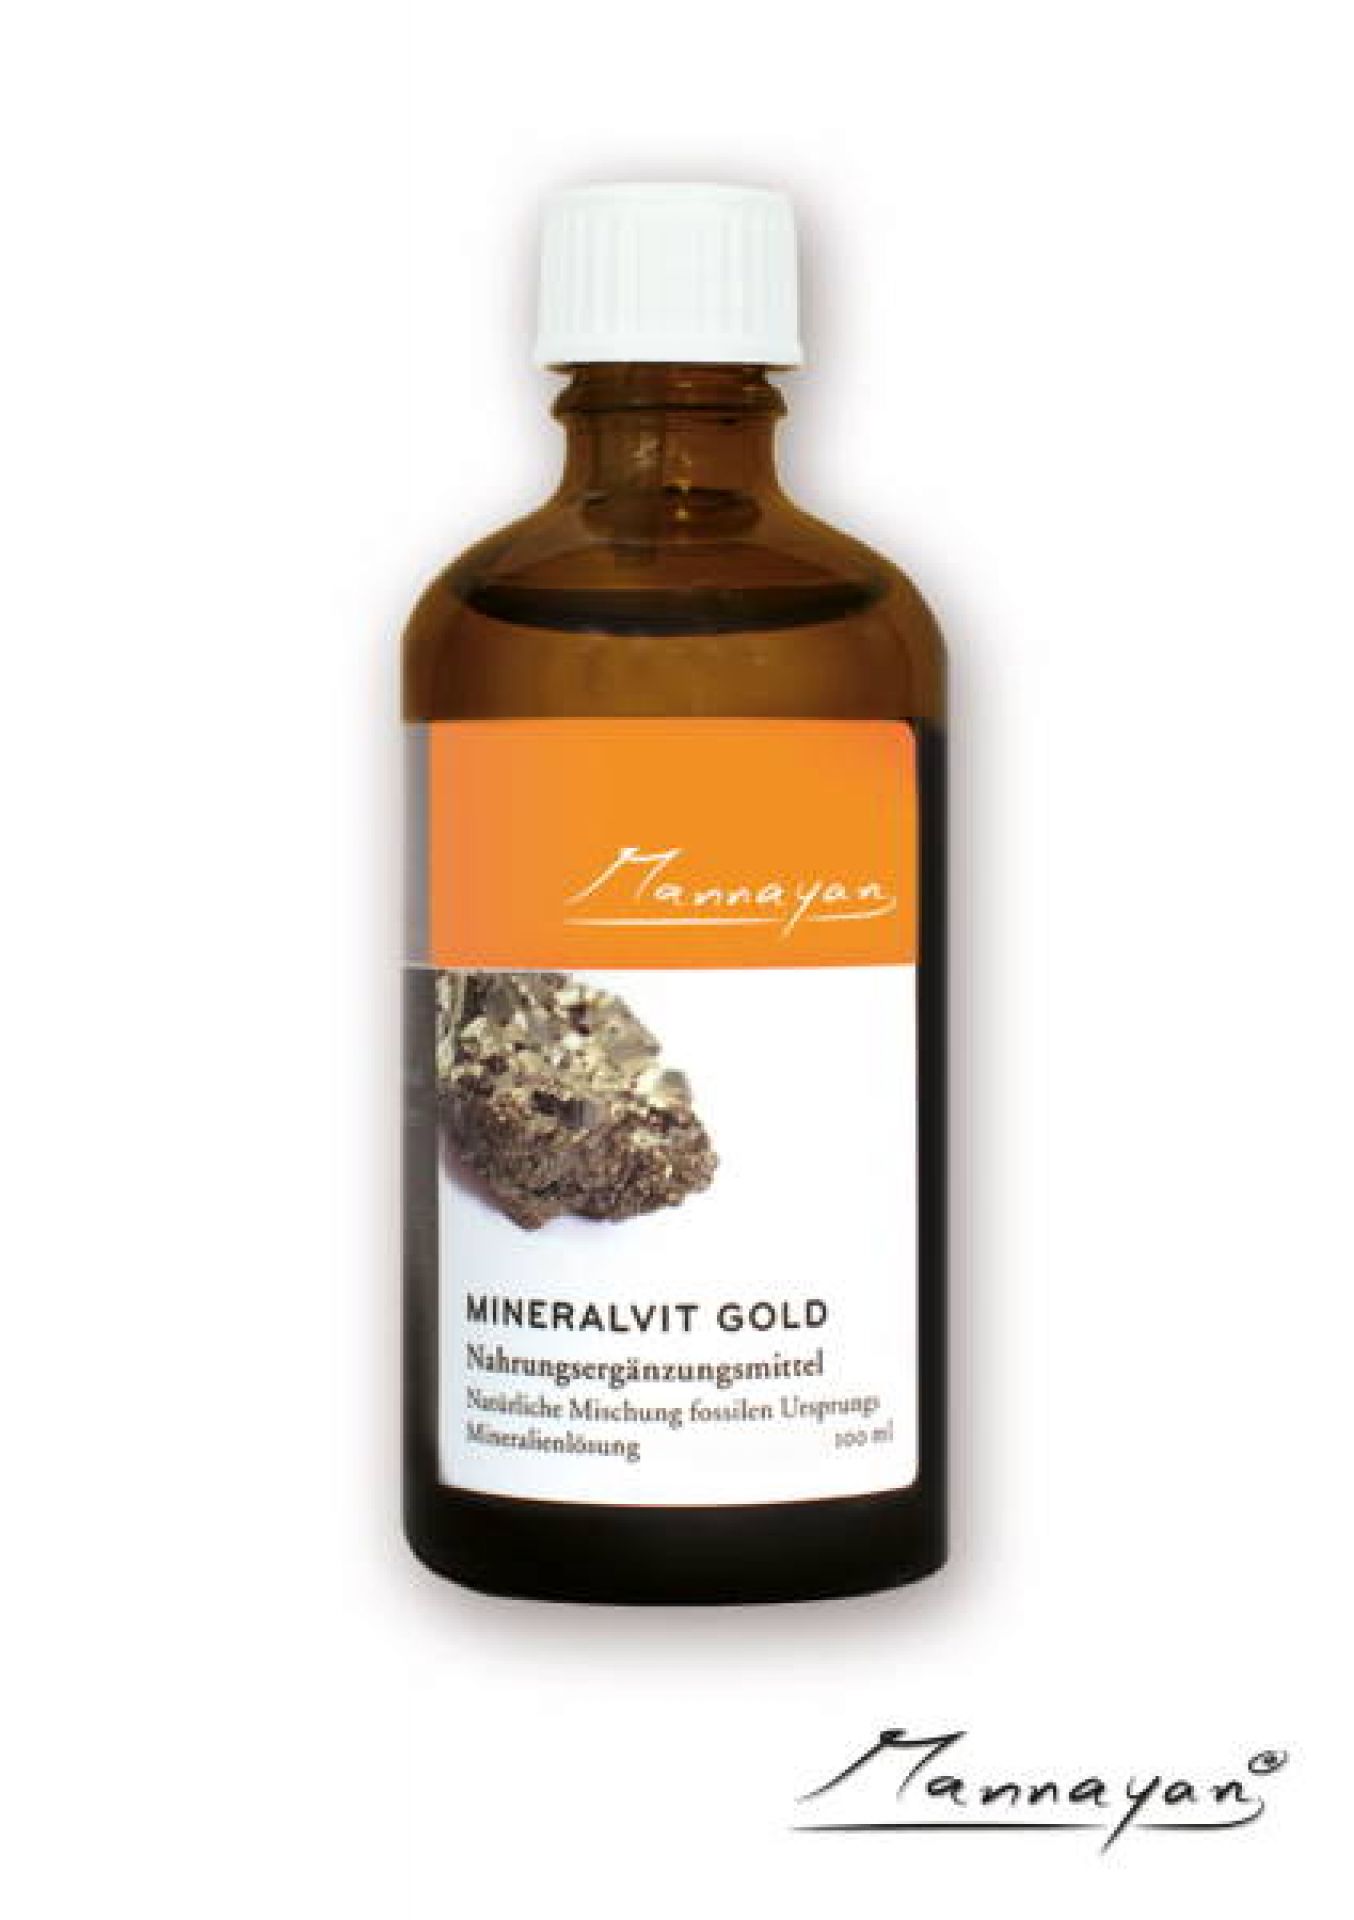 Mineralvit-GOLD 100 ml von Mannayan